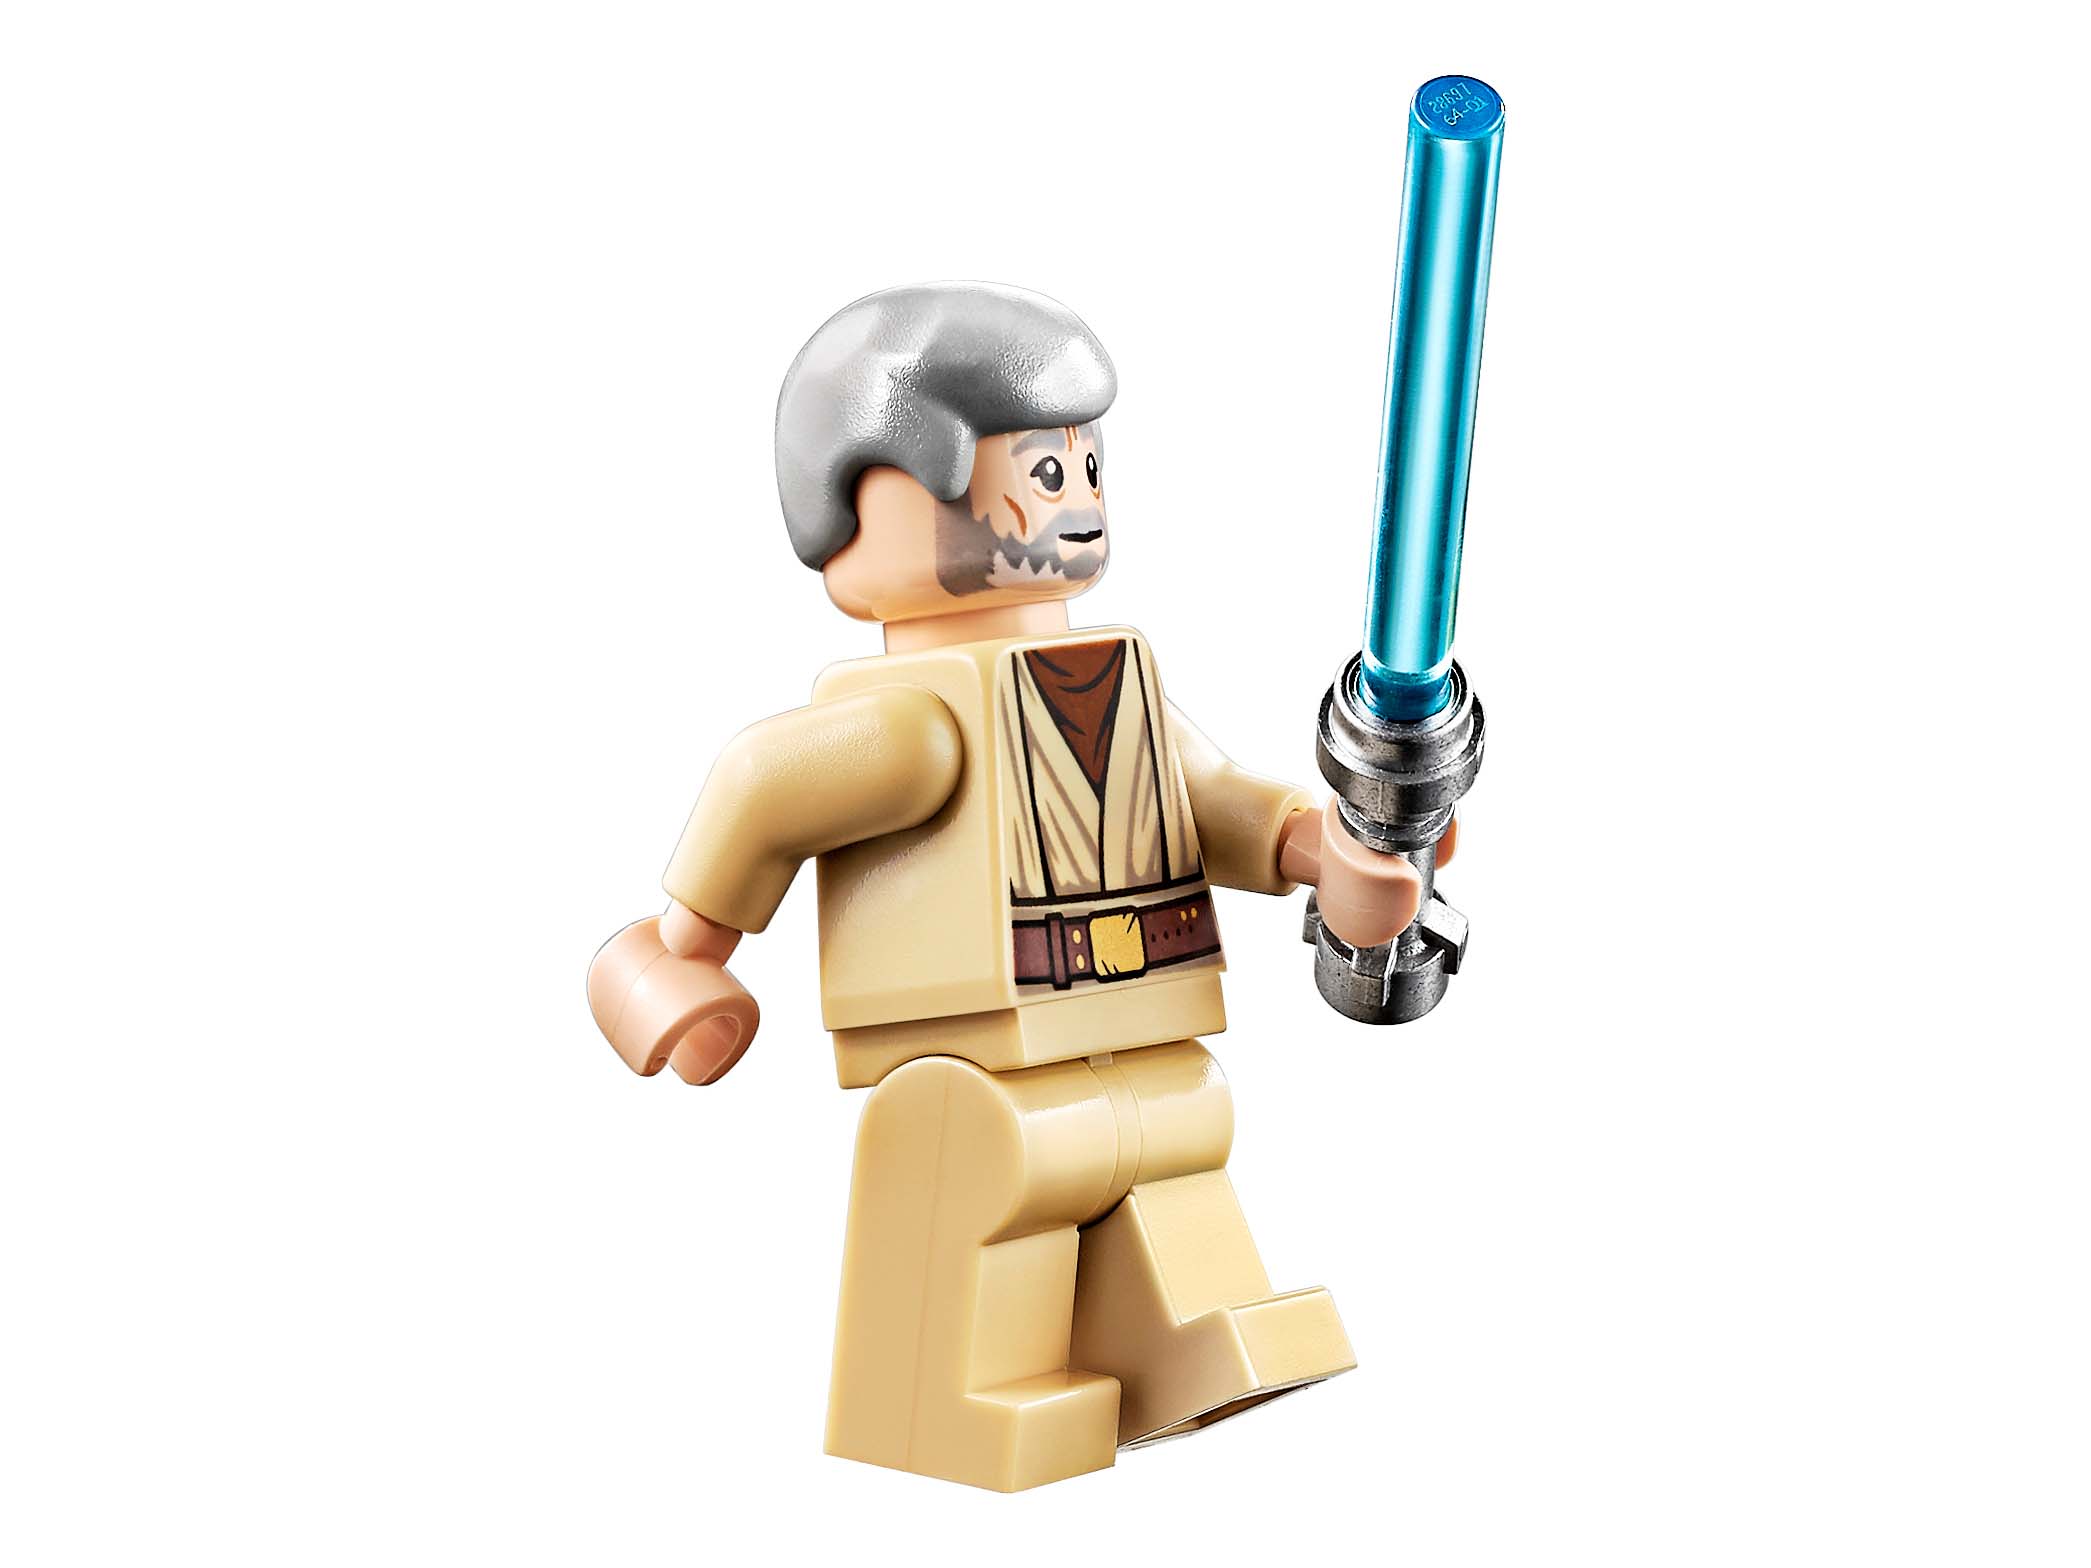 Конструктор Lego Star Wars - Хижина Оби-Вана Кеноби  